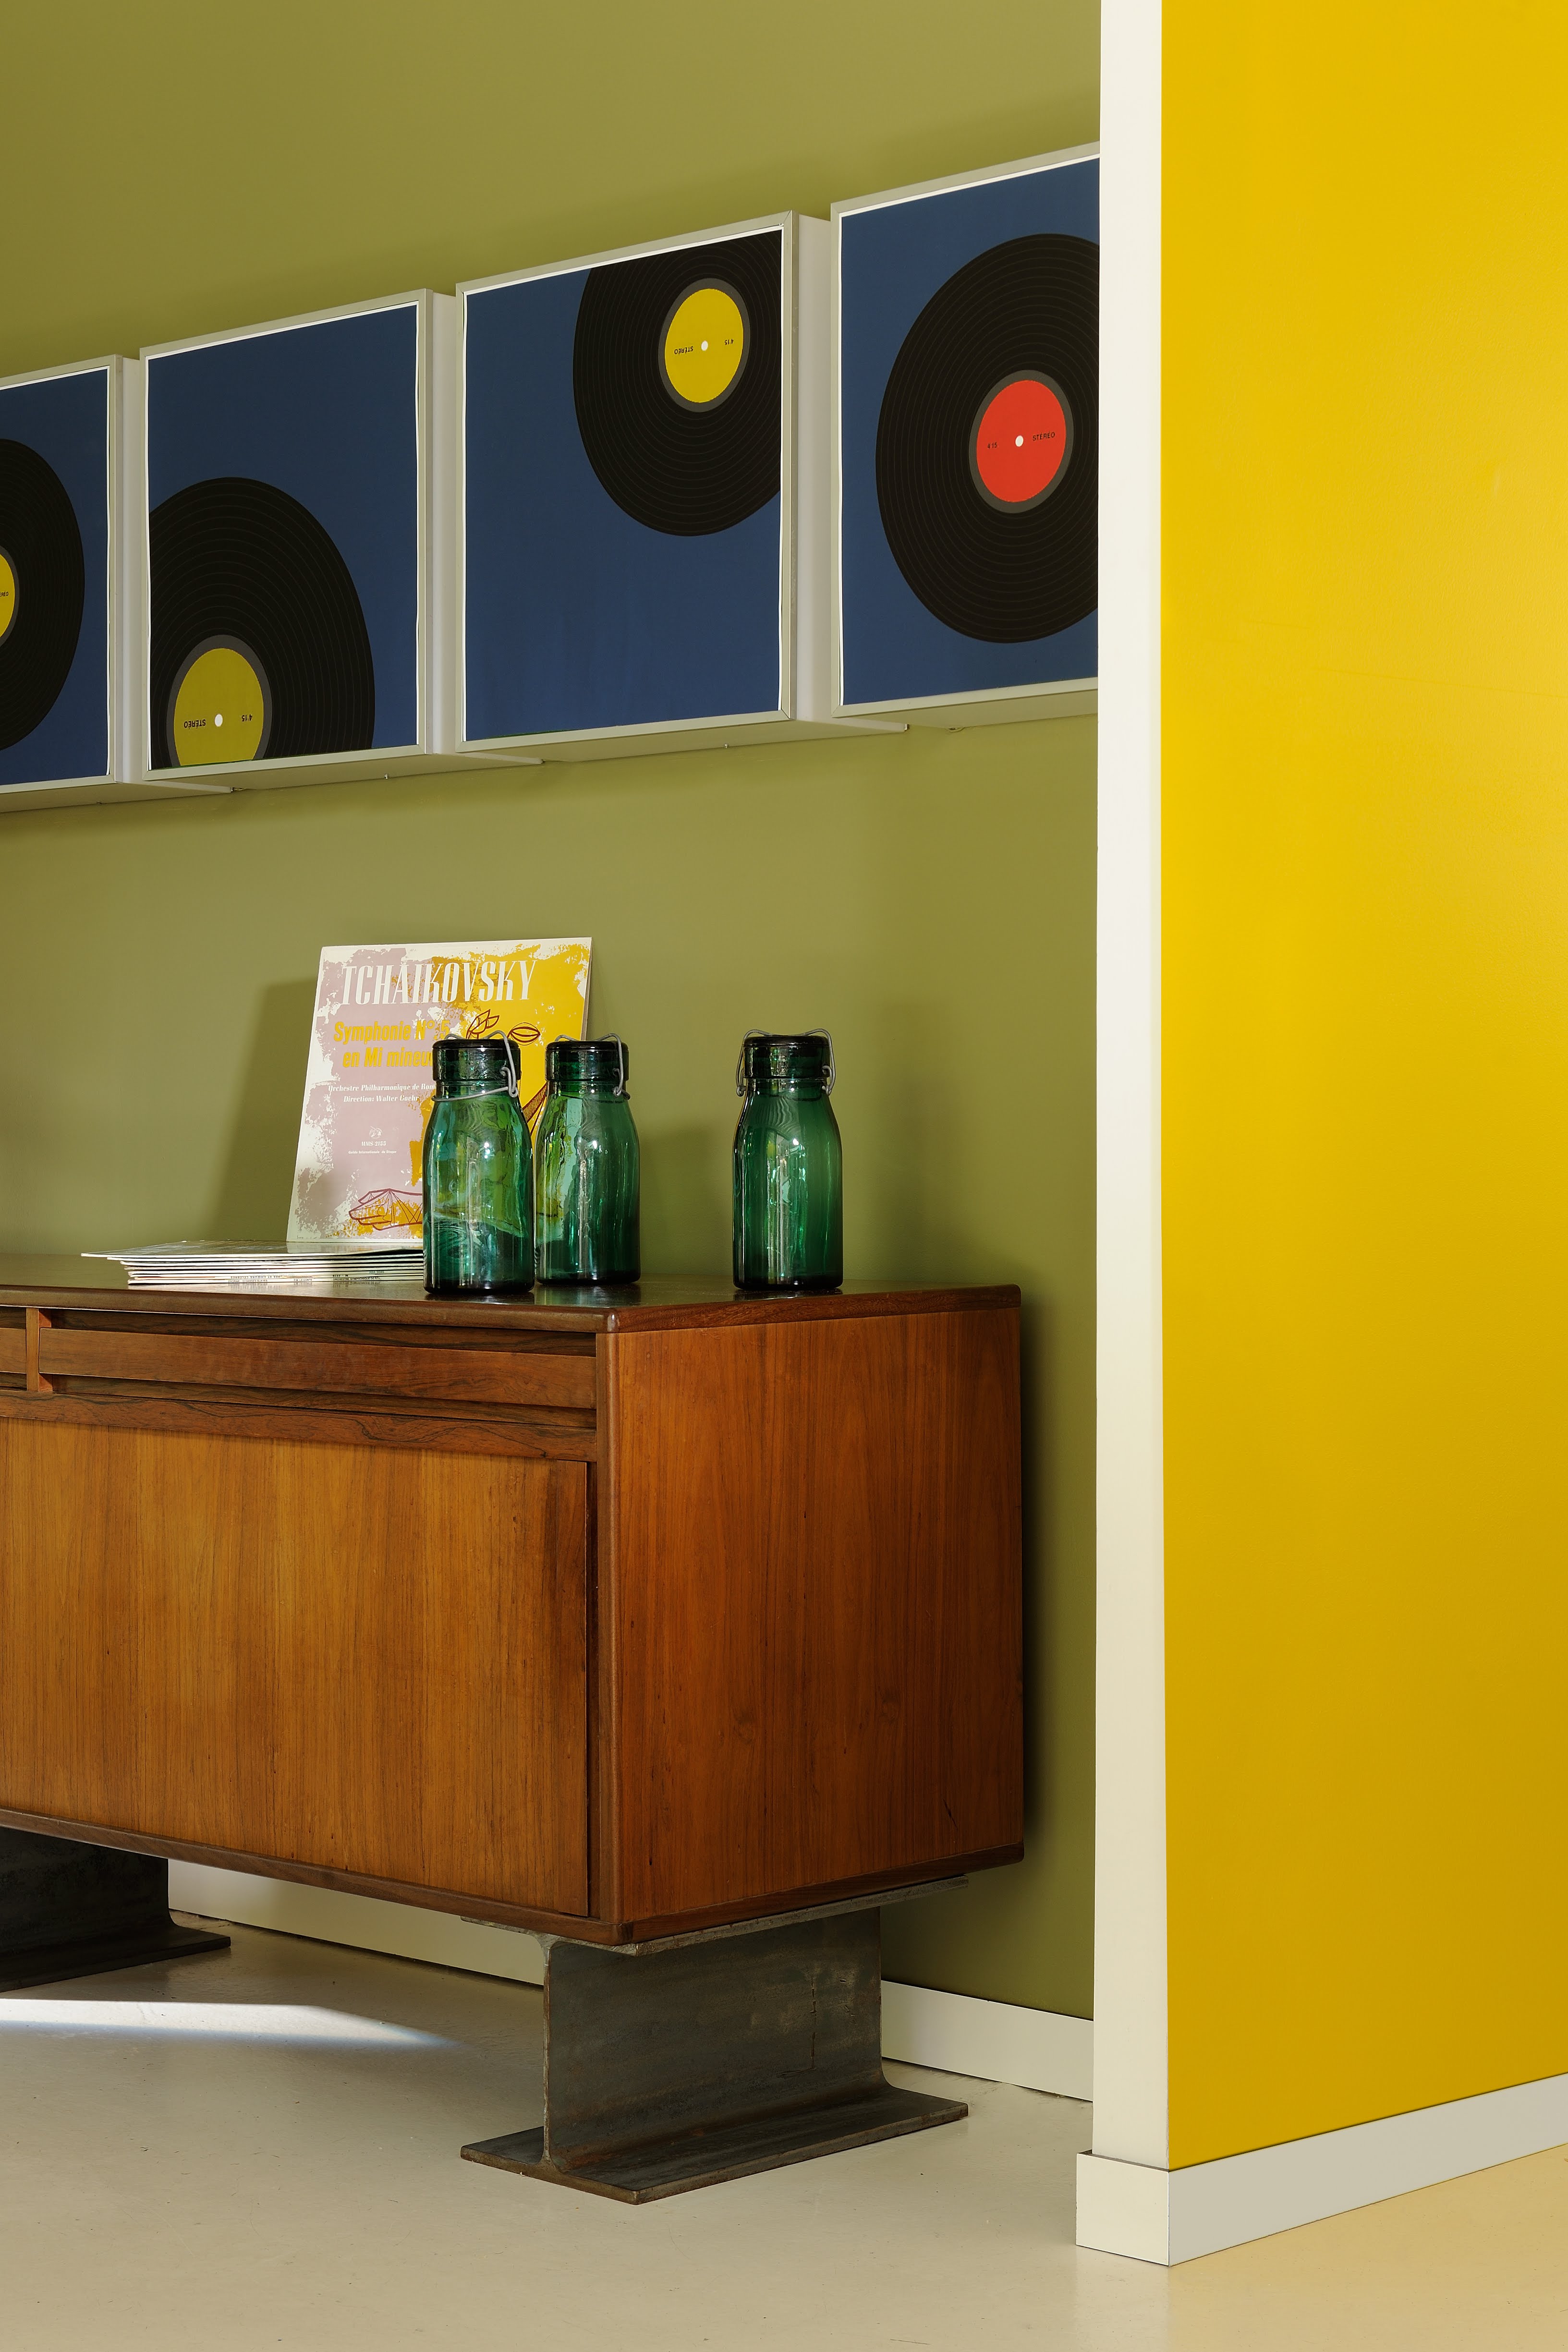 Bureau ou bibliothèque réaslisé(e) avec de la peinture intérieure dans les tons de jaune et de vert